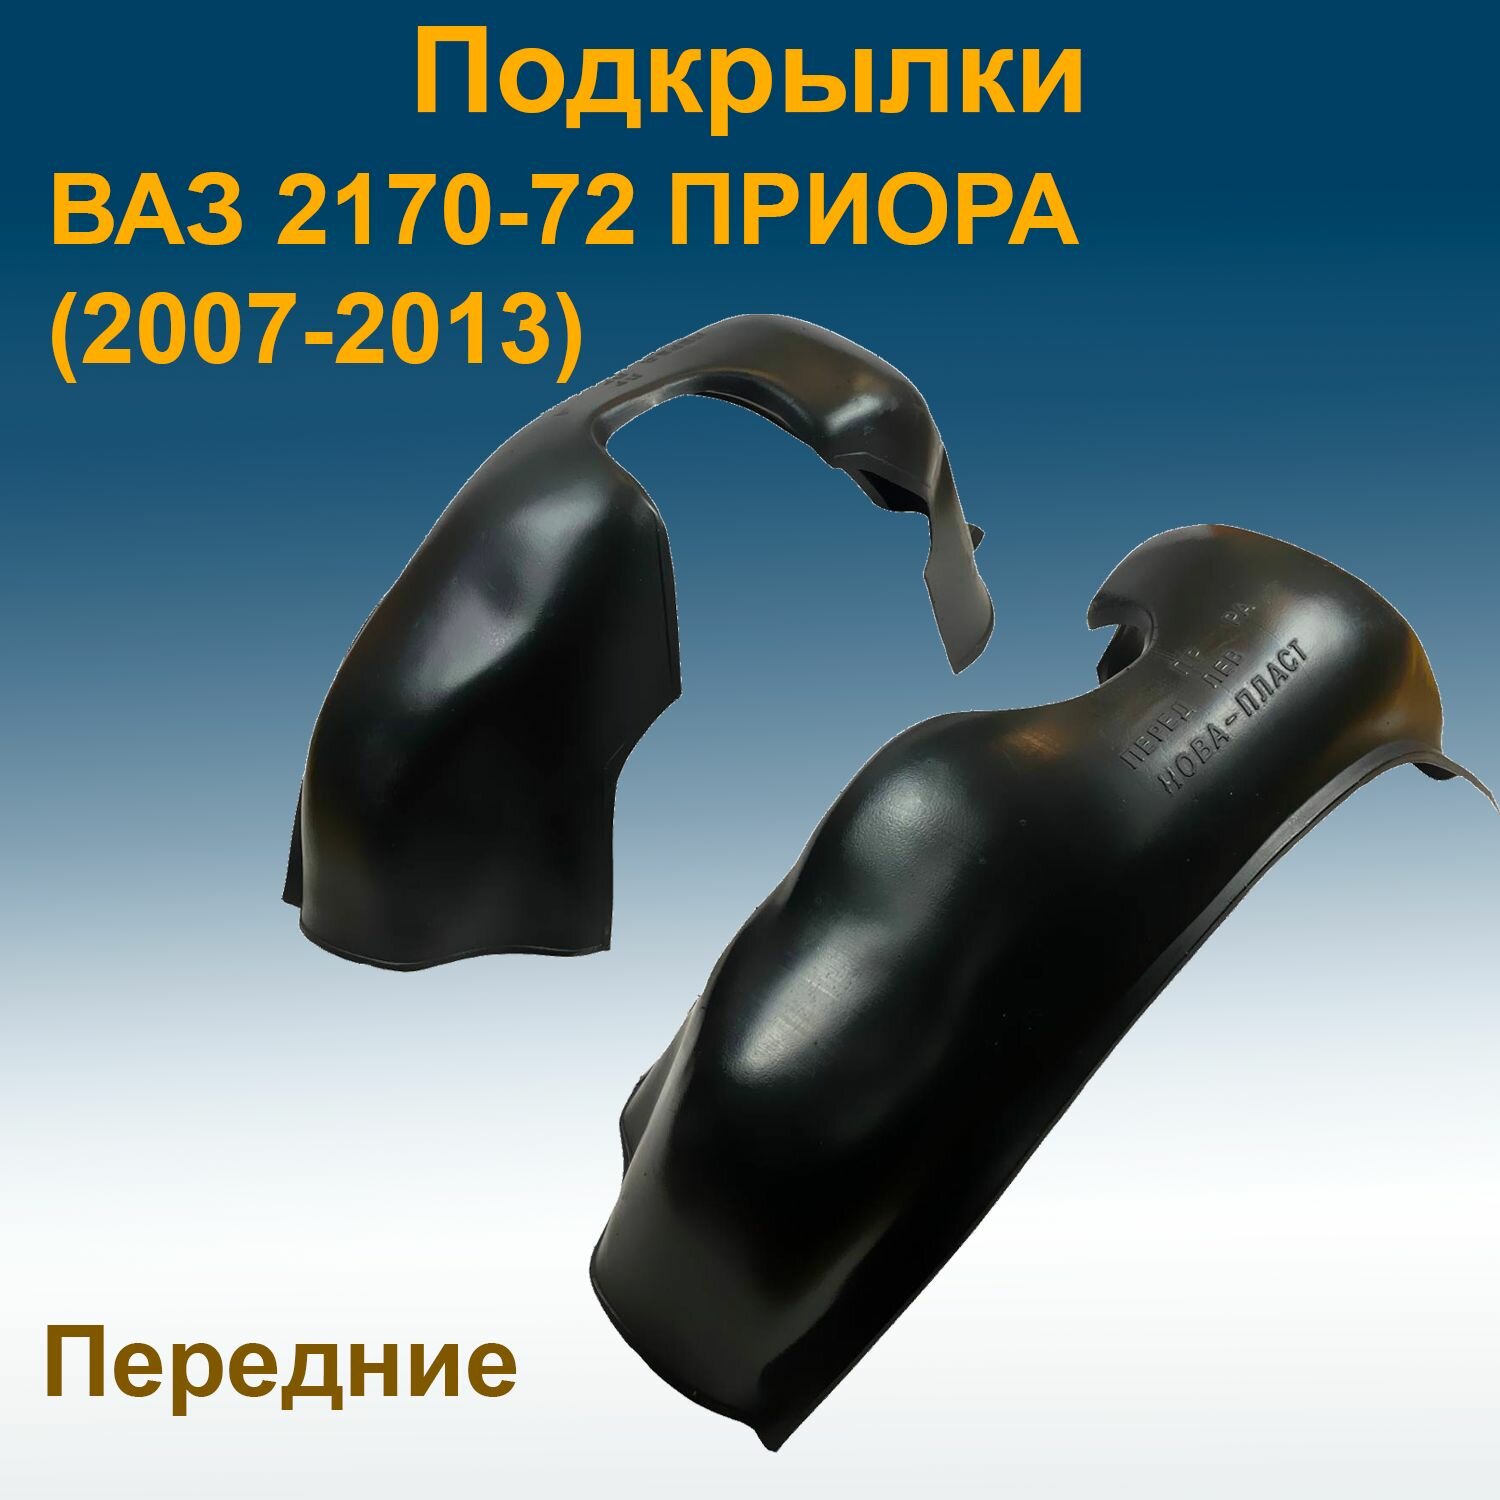 Подкрылки передние для Lada Priora 2170-72 (2007-2013) Star 2 шт